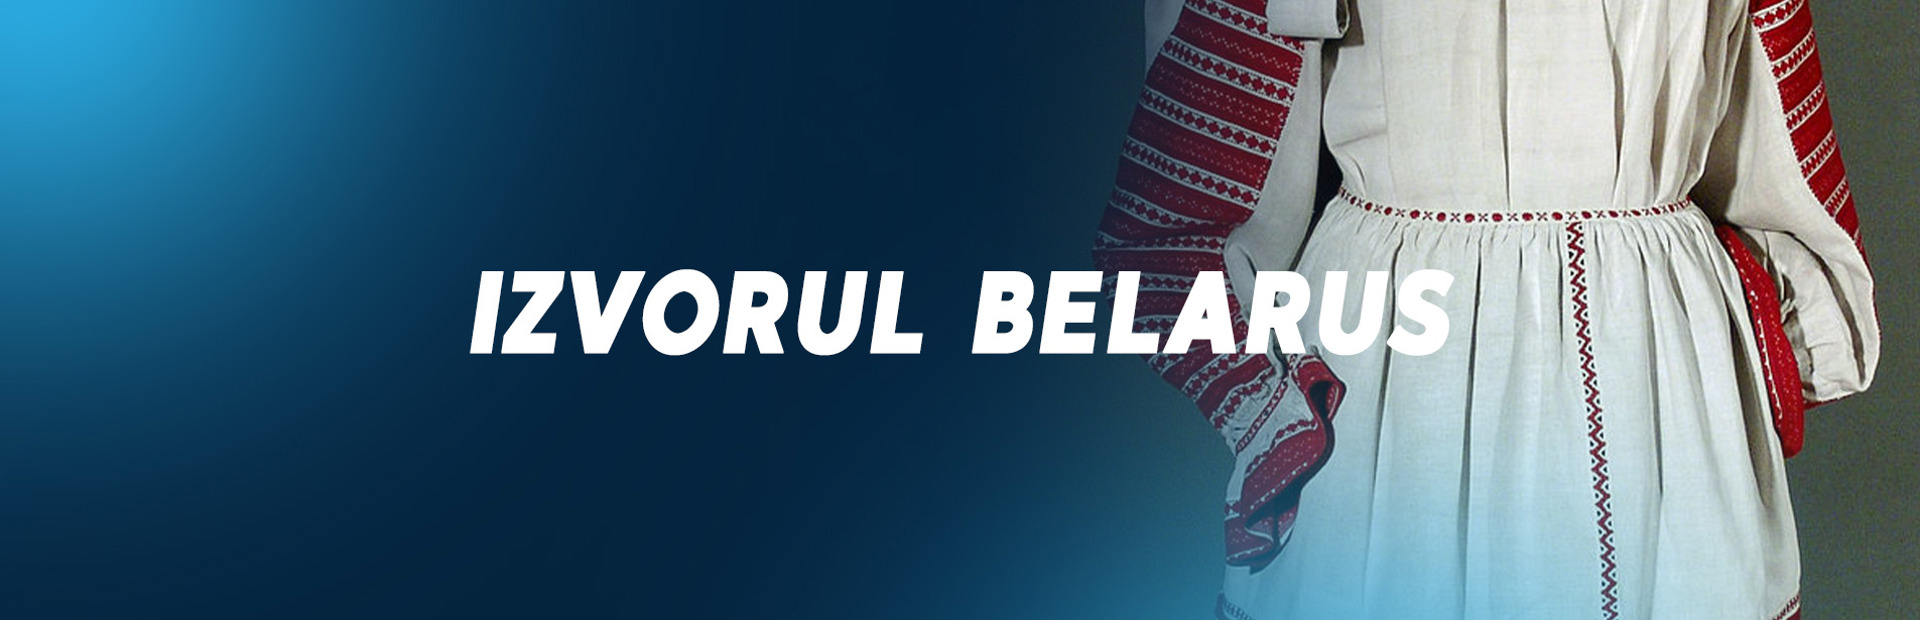 Izvorul belarus